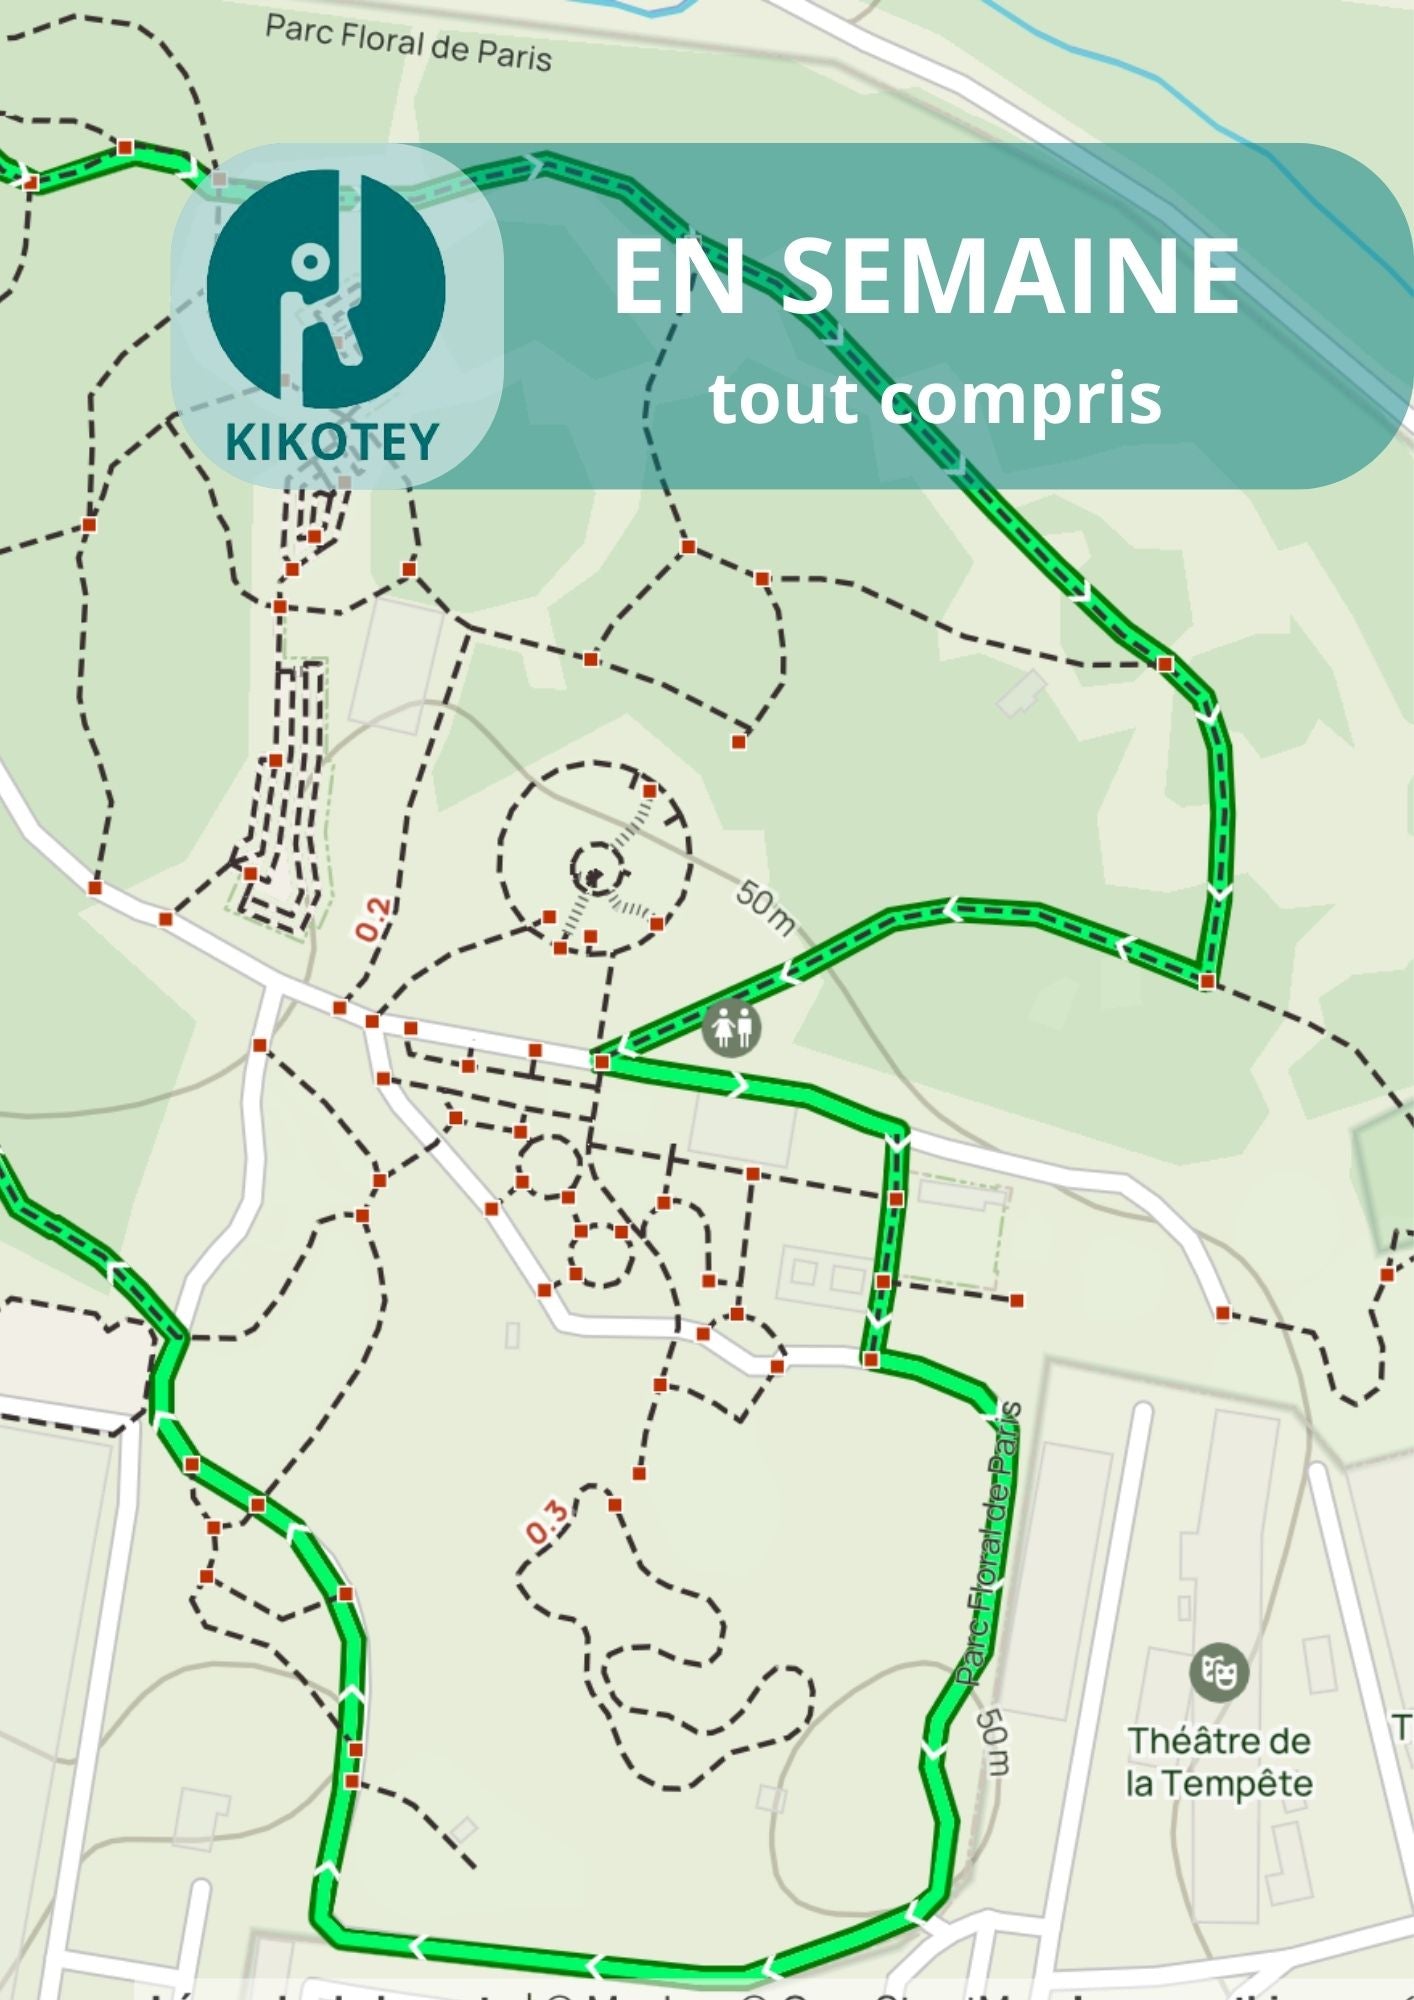 Randonnées | Balade au Square Van Vollenhoven - Parc Floral de Paris - Bois de Vincennes | Offre En Semaine Tout Compris